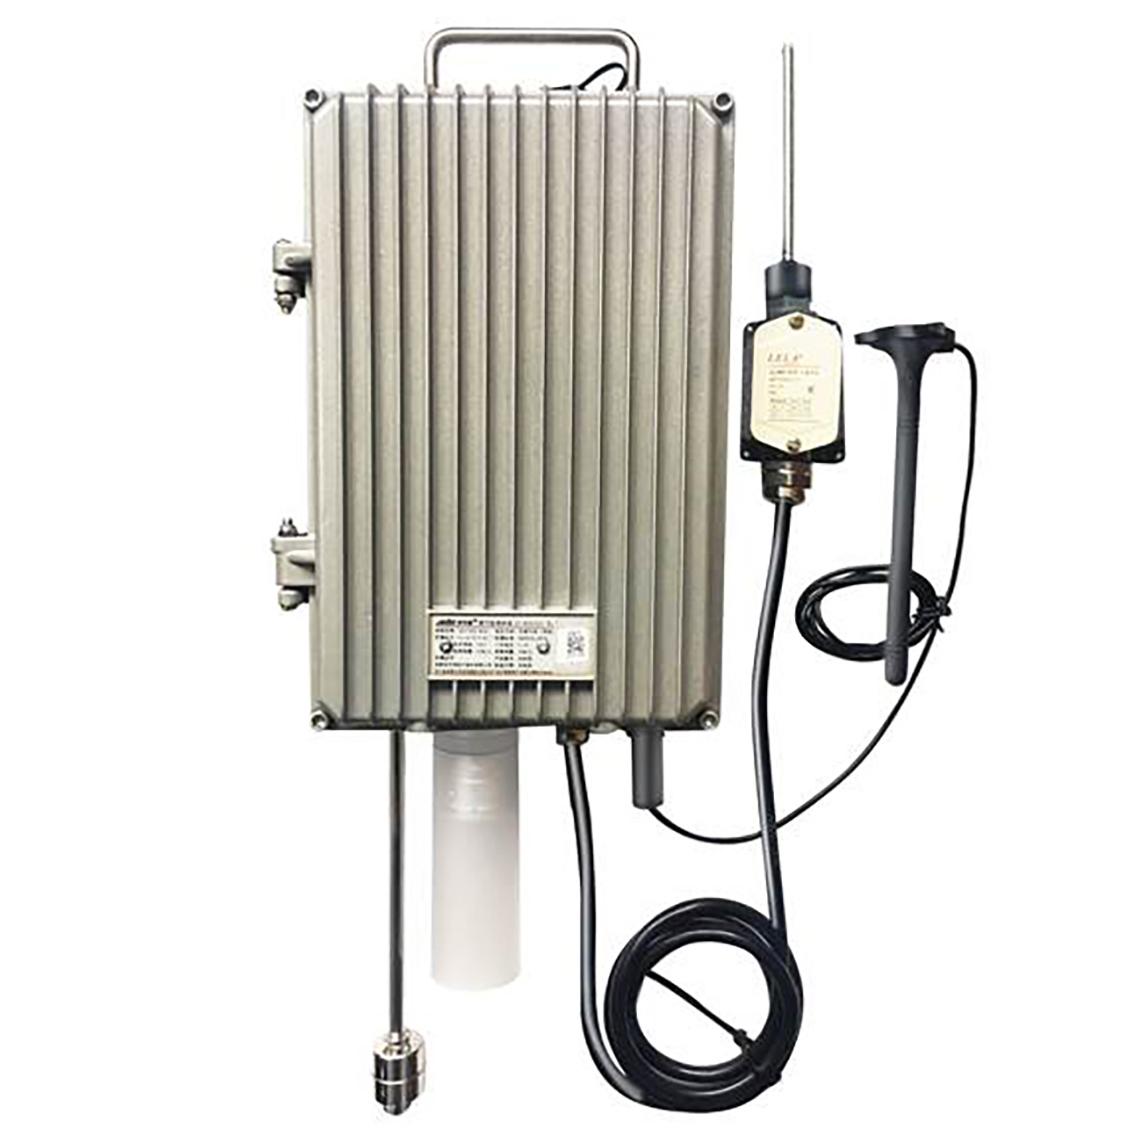 DT-AEC2531 Dispositivo di monitoraggio del gas combustibile per pozzi sotterranei